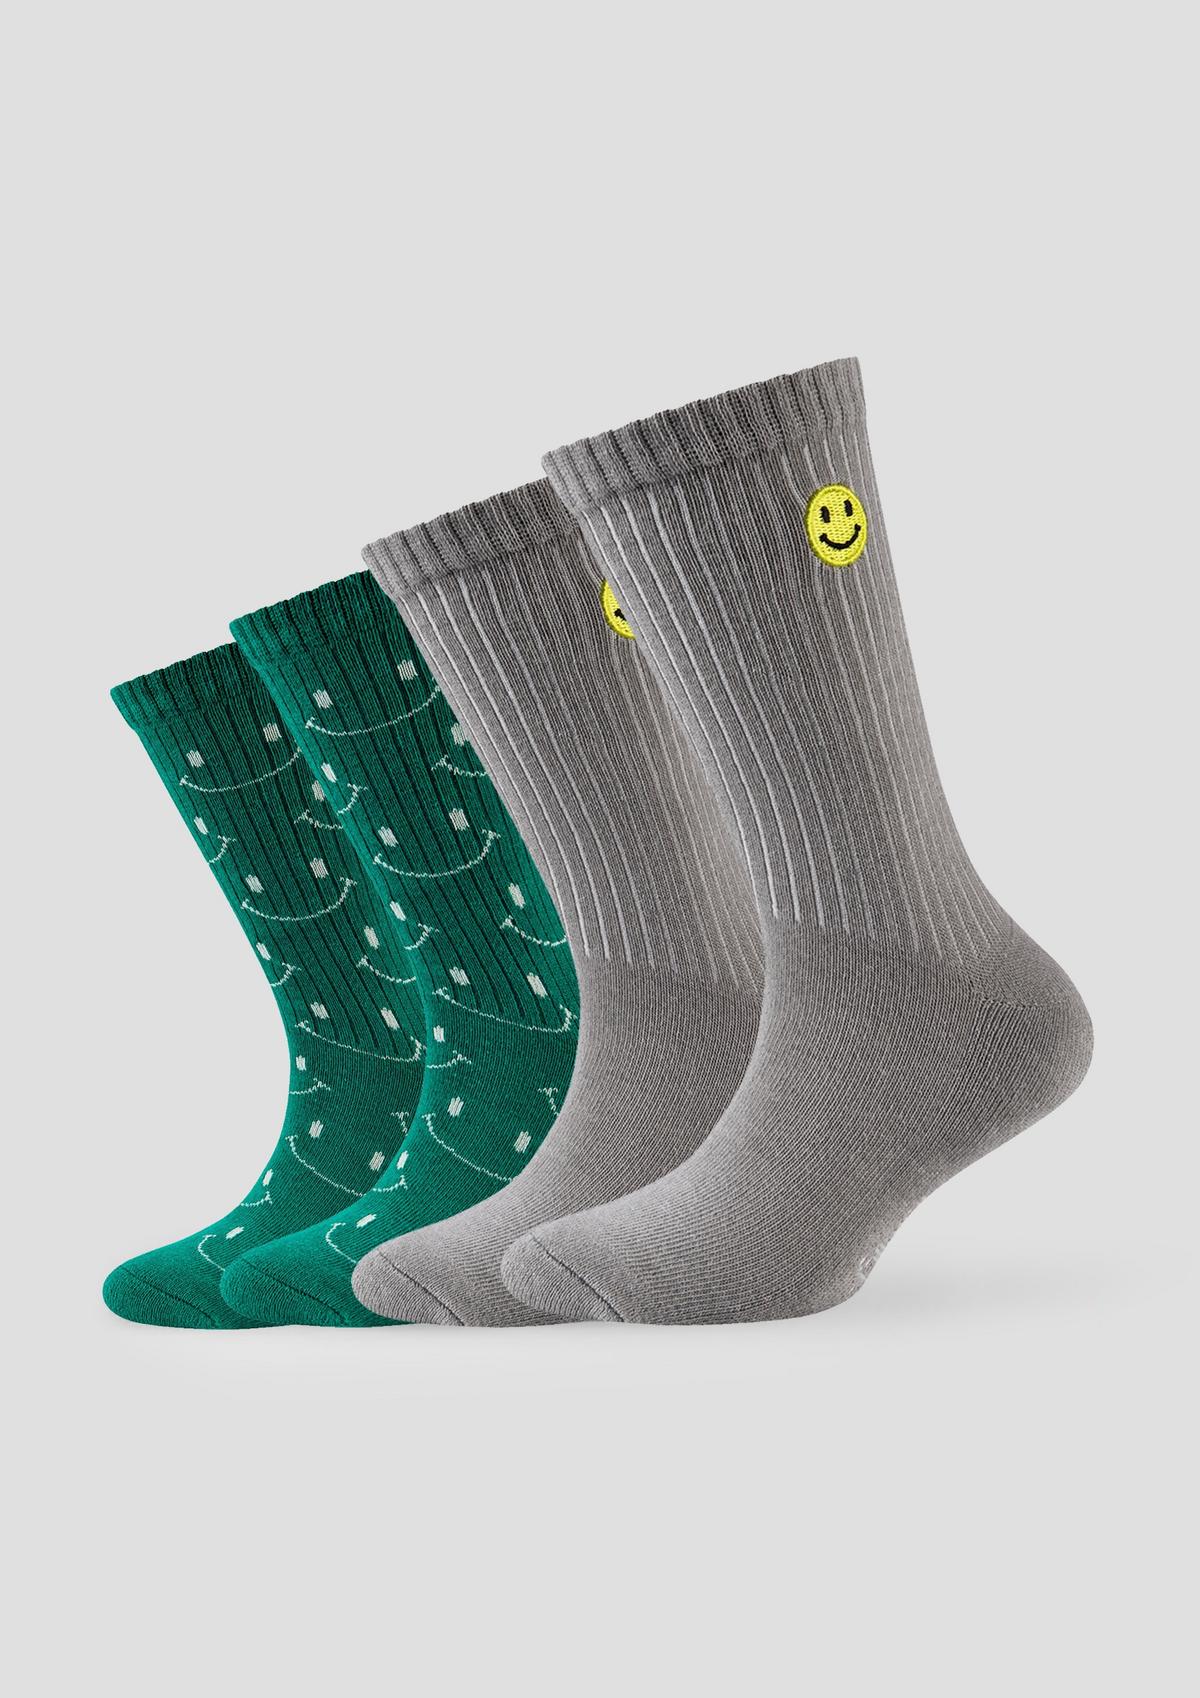 Socken mit Smiley-Details weiß -